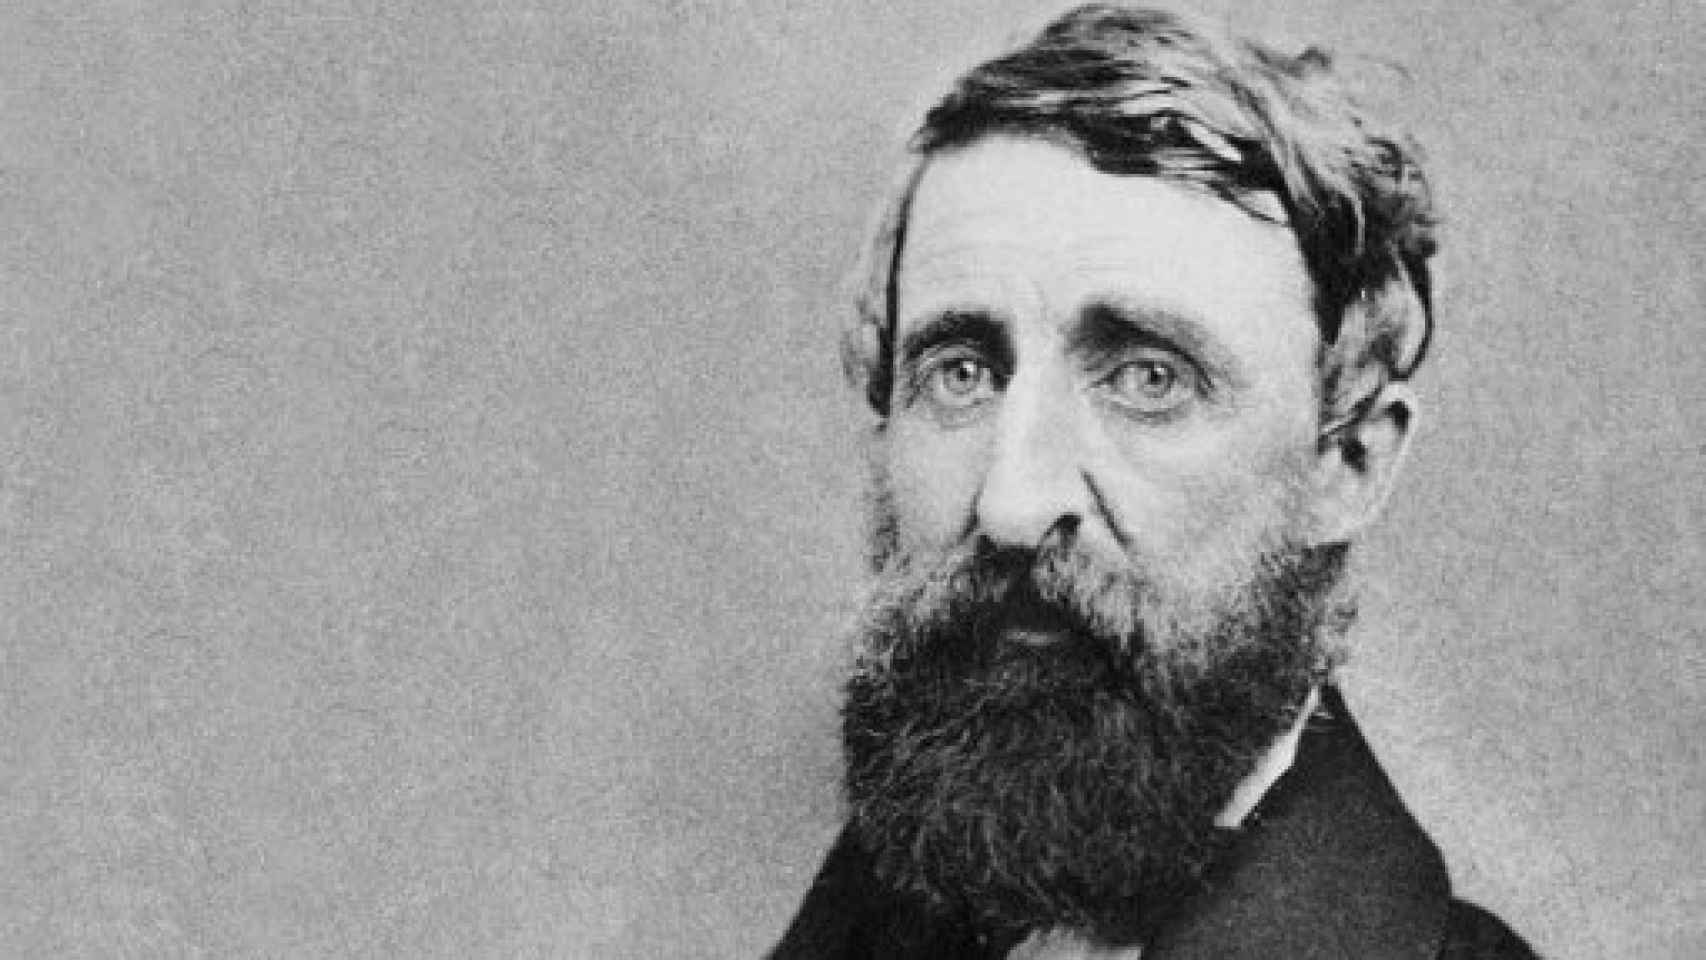 Image: La vida salvaje de Thoreau